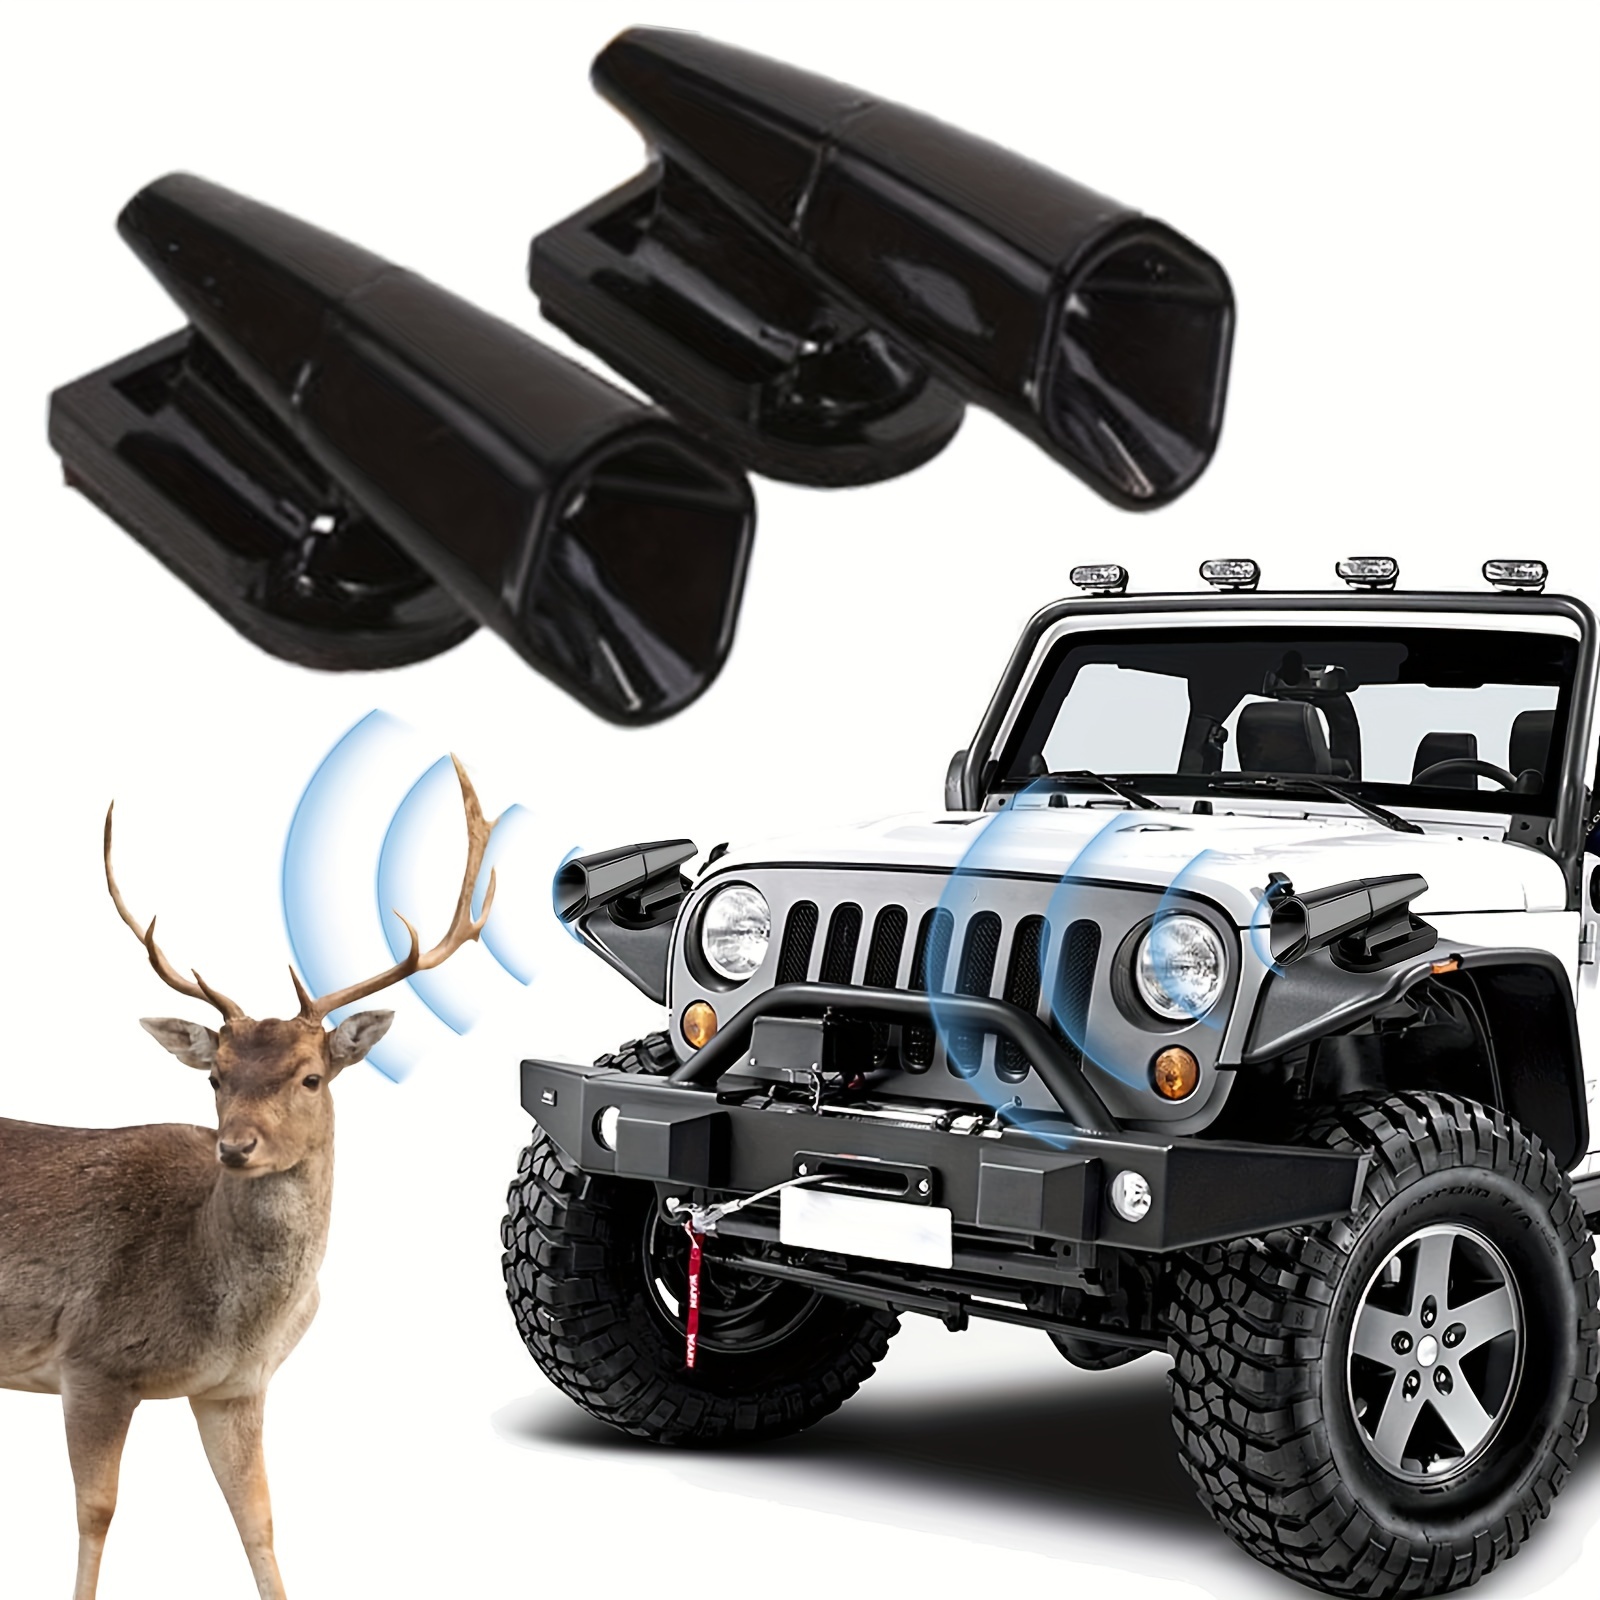 Deer Whistles Wildlife Warning Cars Ultrasonic Deer Warning - Temu